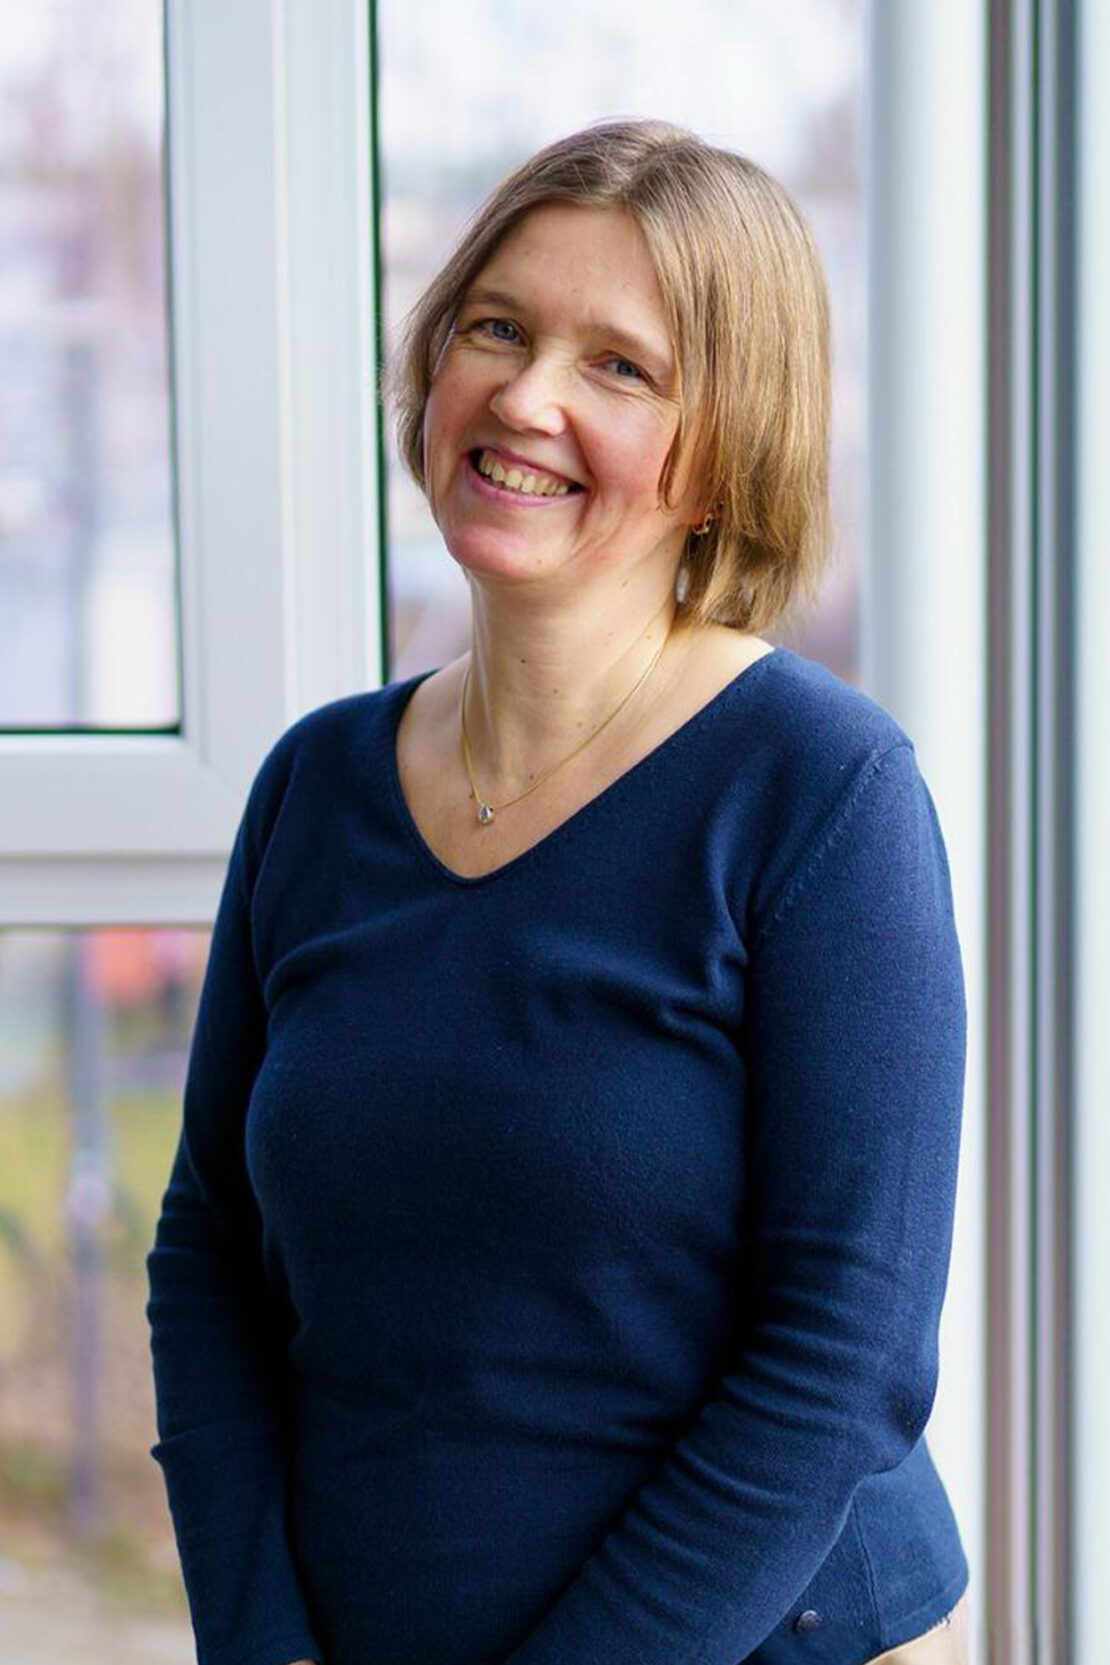 Sandra Oldenburg, Rechtsanwalts- und Notarfachangestellte der Ebert Rechtsanwälte in Kiel steht am Fenster und lächelt.